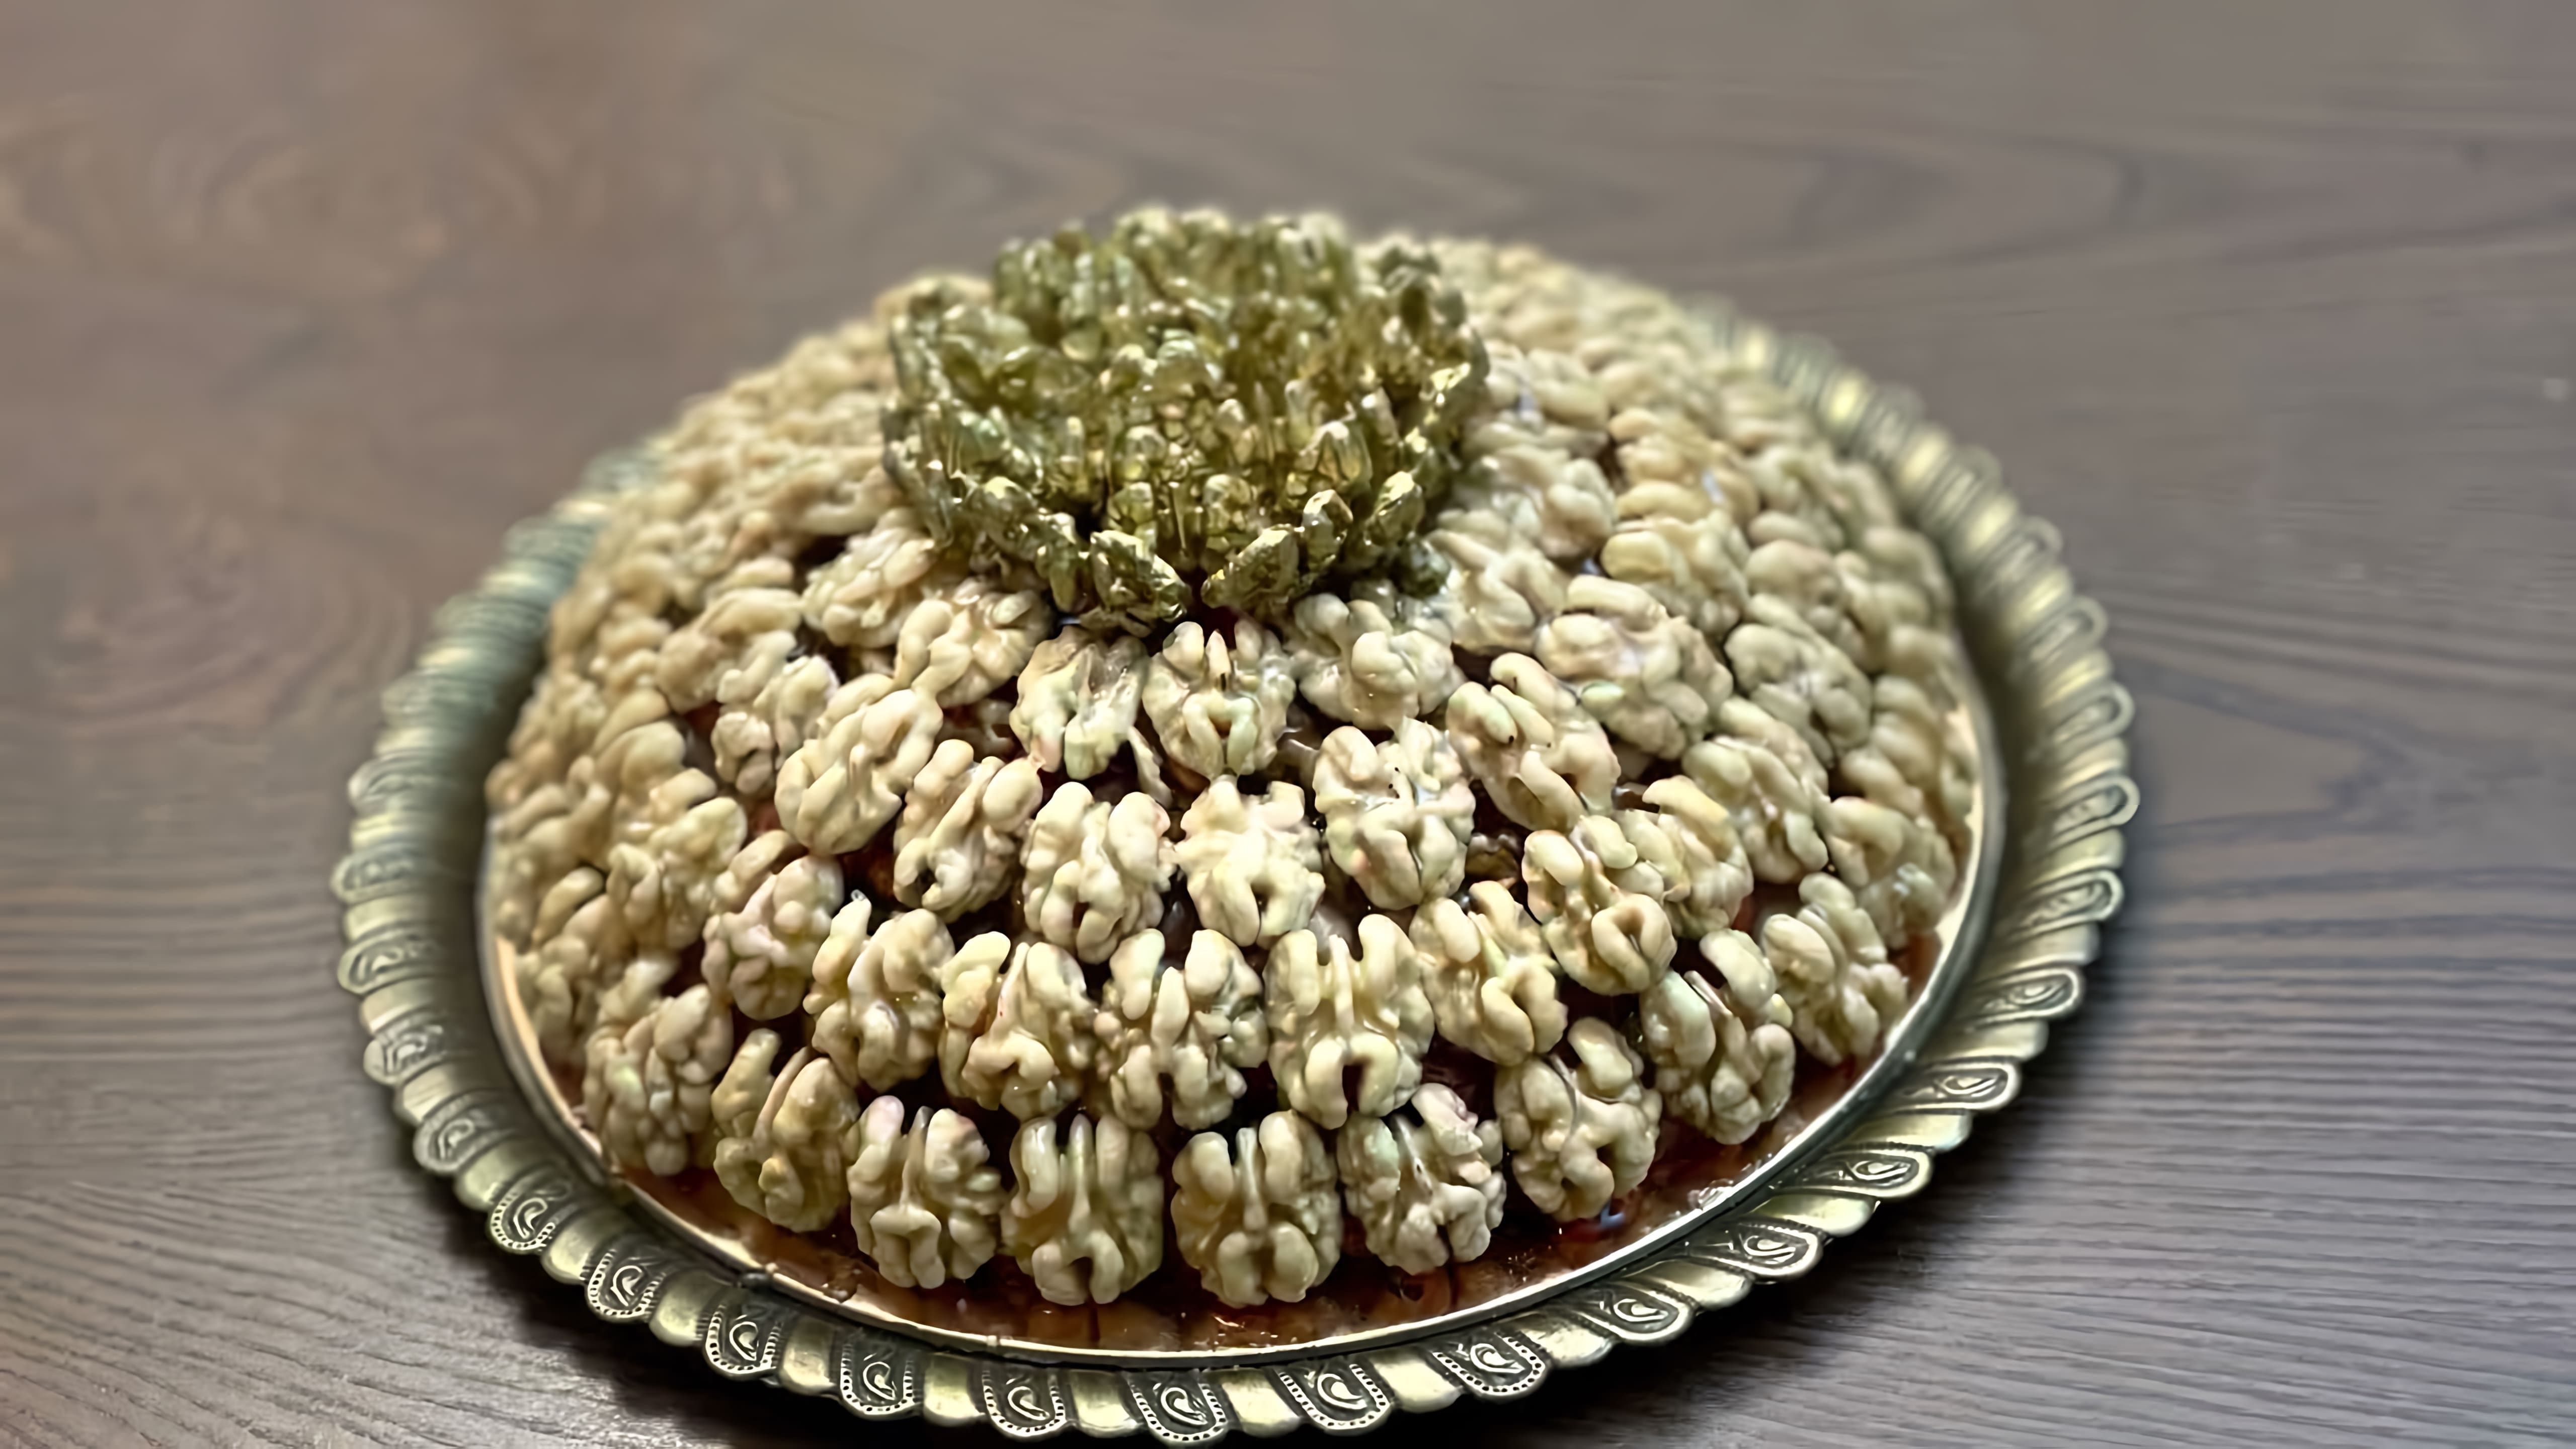 В этом видео демонстрируется процесс приготовления ореховой халвы по традиционному дагестанскому рецепту